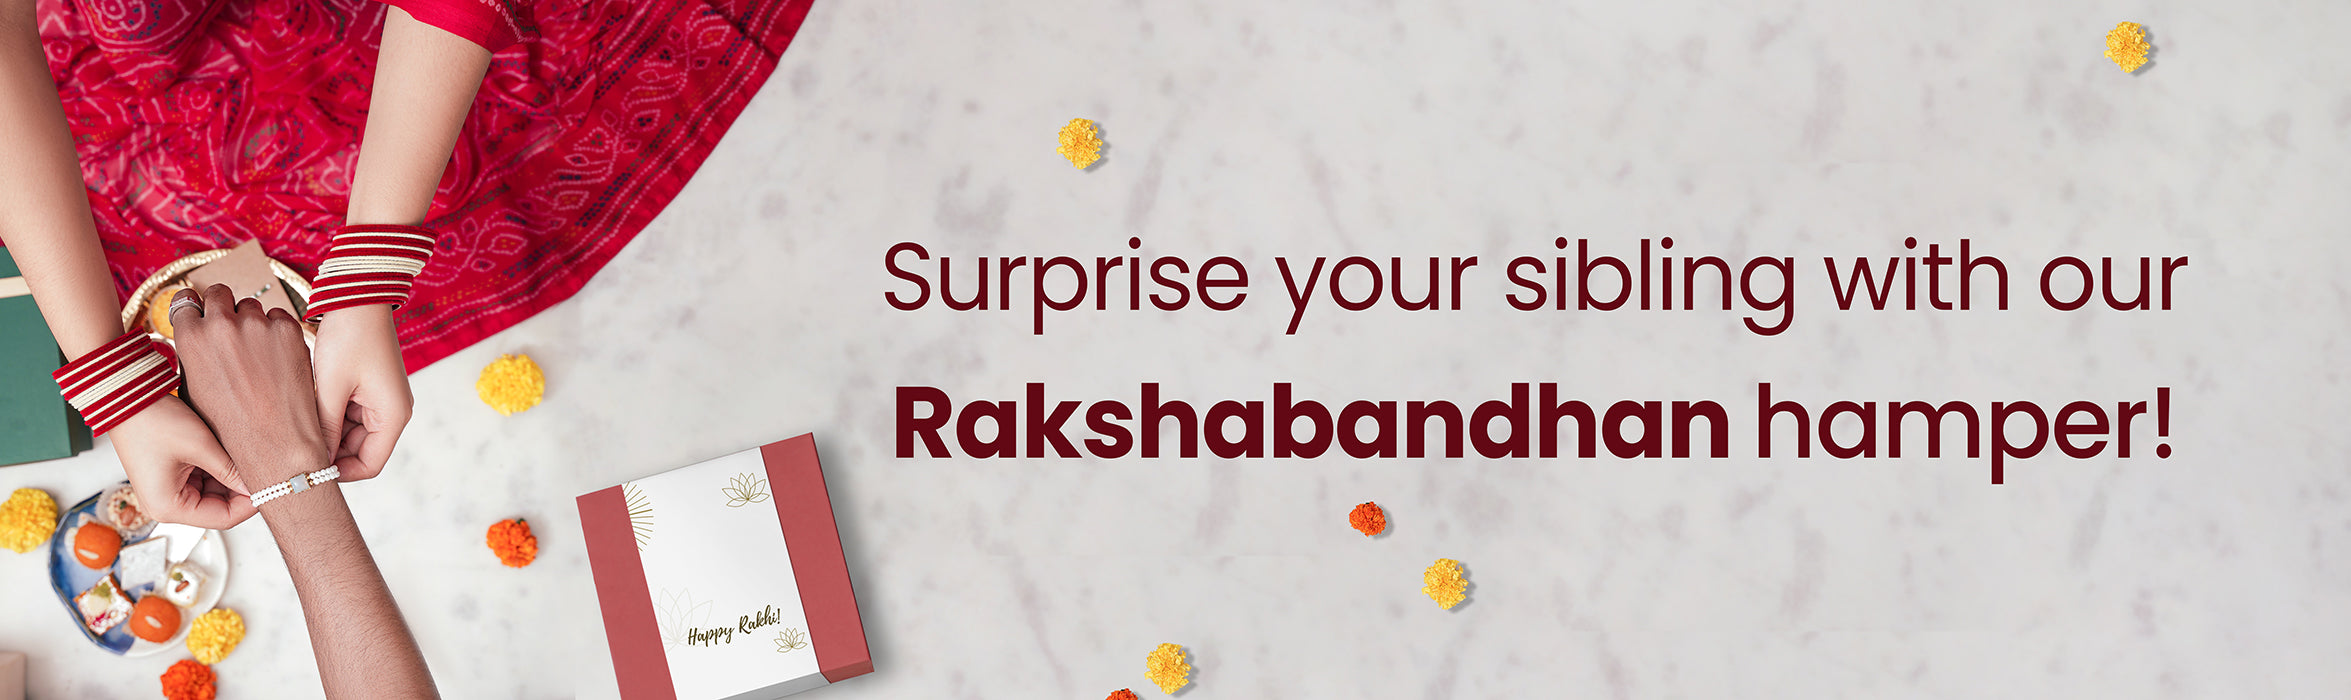 Personalized Name Rakhi For Brother Raksha Bandhan Designer Handmade Rakhi  Thread For Bhaiya Custom Name Rakhi - Rakhi Gift Hamper  Ferre-rocher/ghirar-delli/kit-kat | Michaels